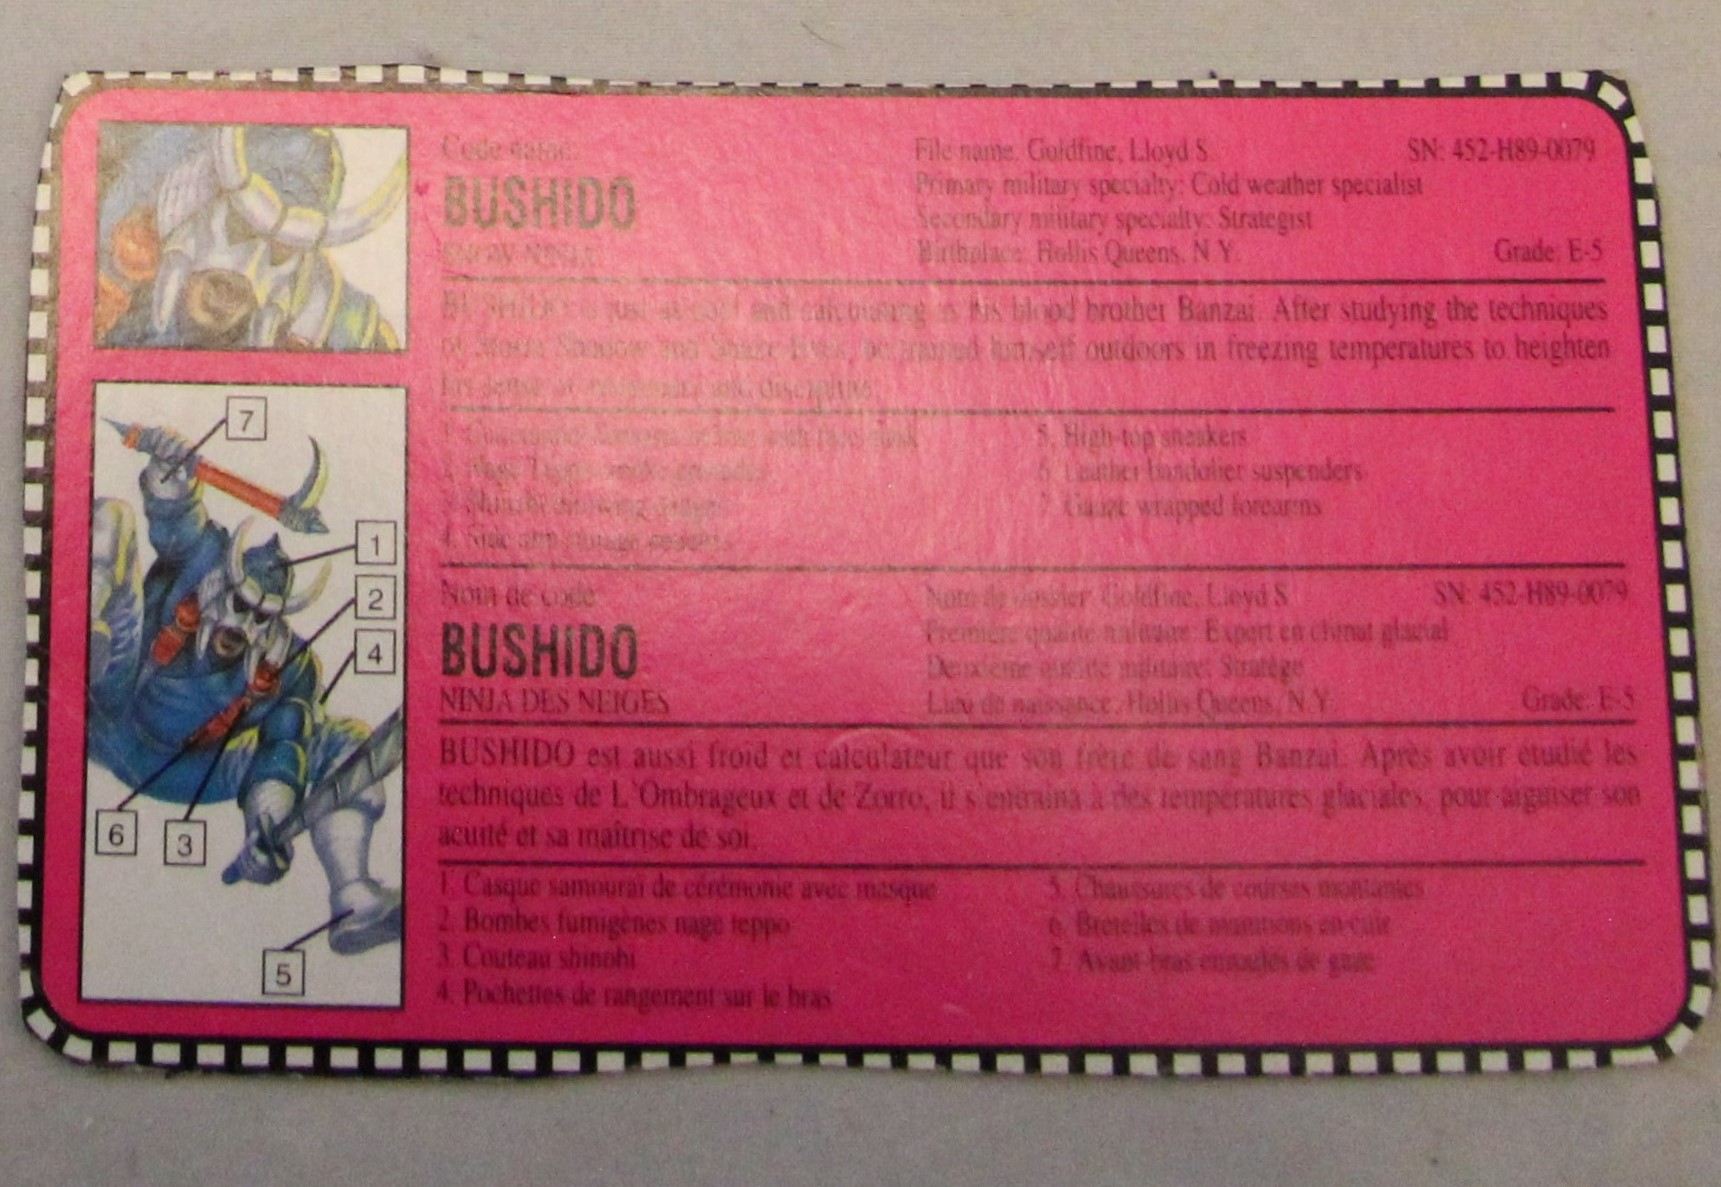 1993 bushido file card